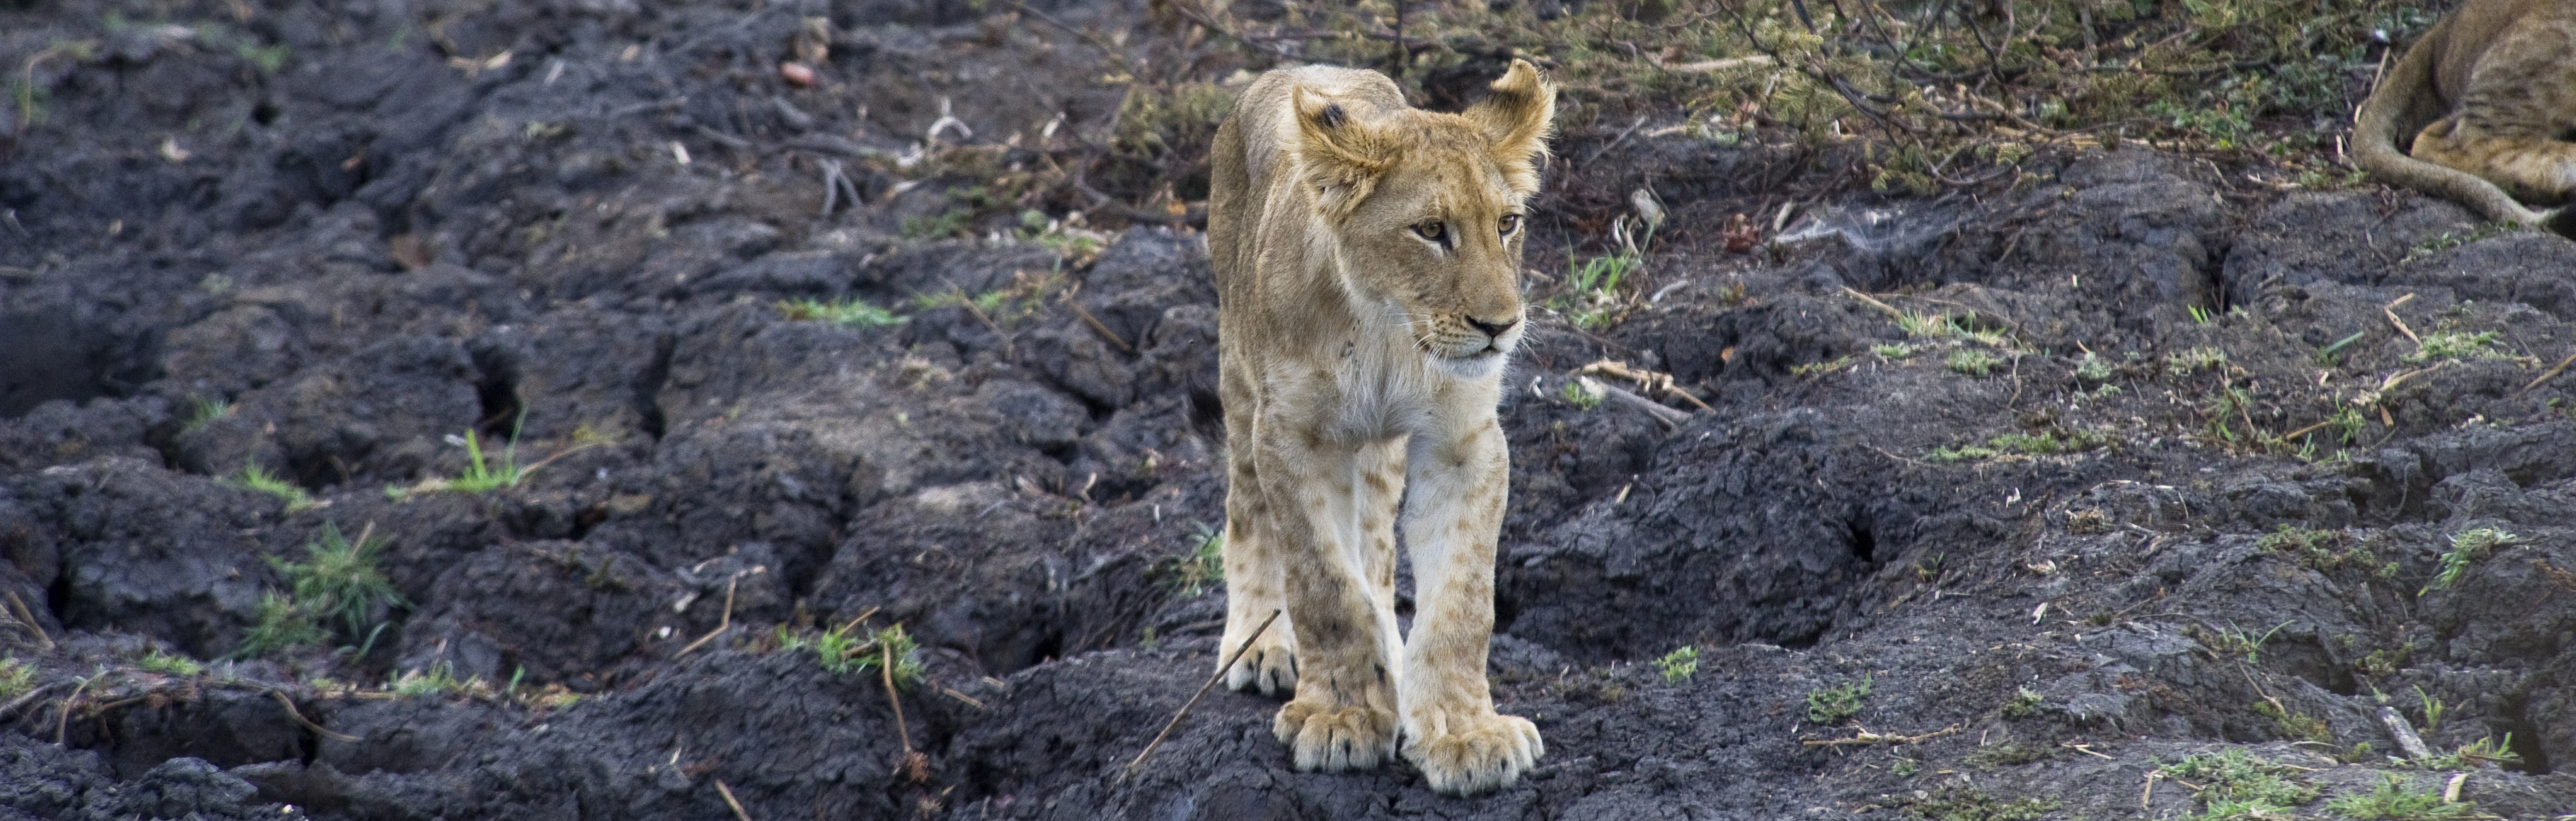 Lion cub in Kafue, Zambia | J Goetz